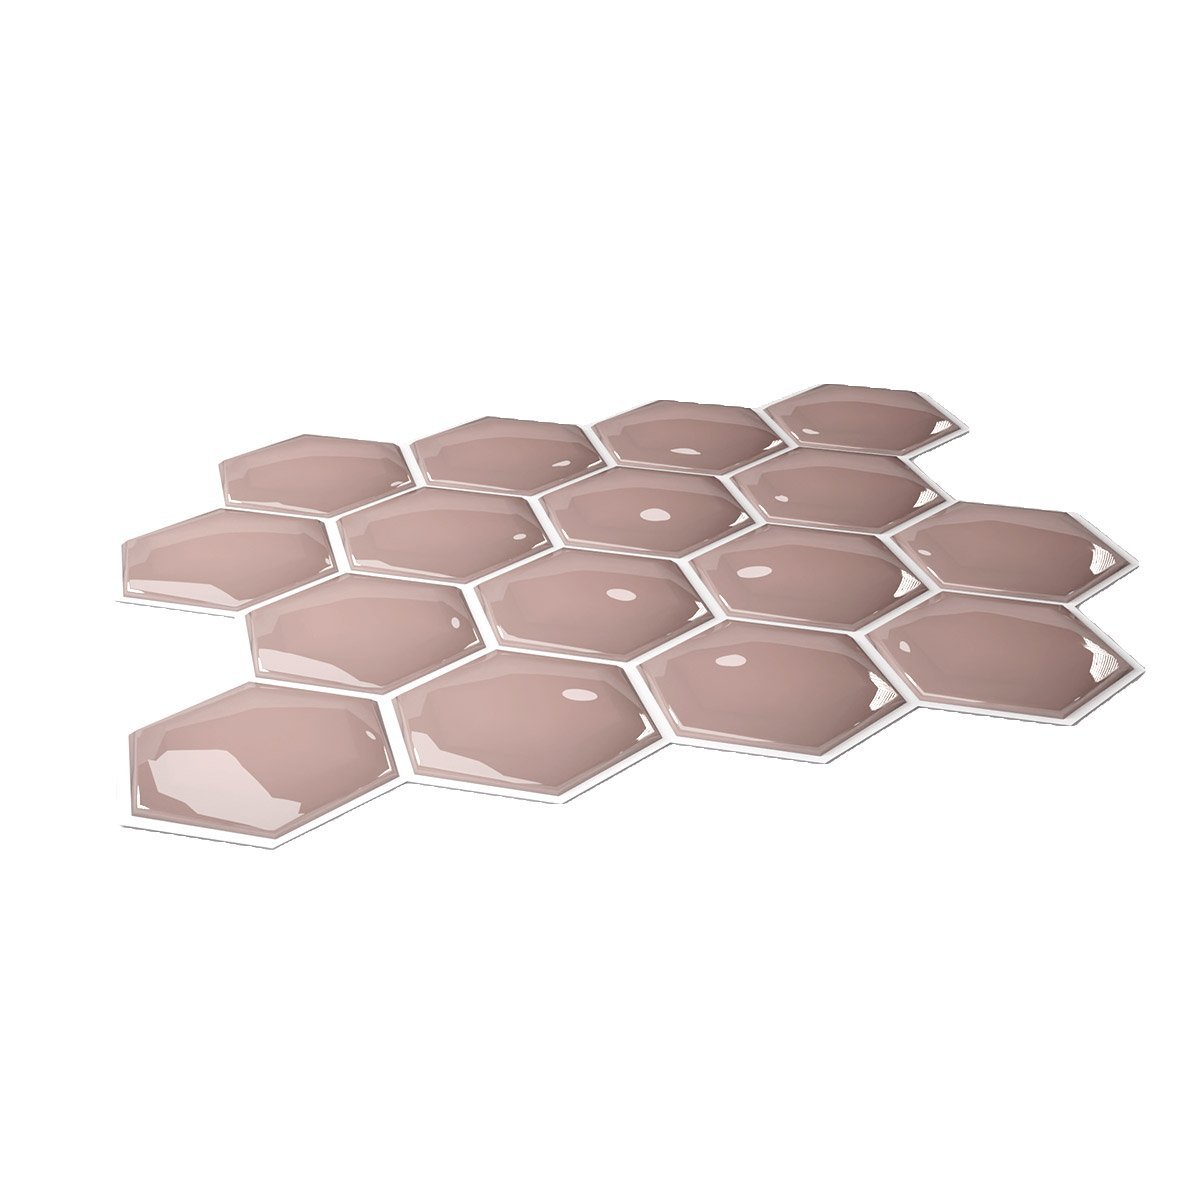 Pastilha Hexagonal Rosé Gold com Rejunte Branco Lavável Banheiro Cozinha Sala - 3